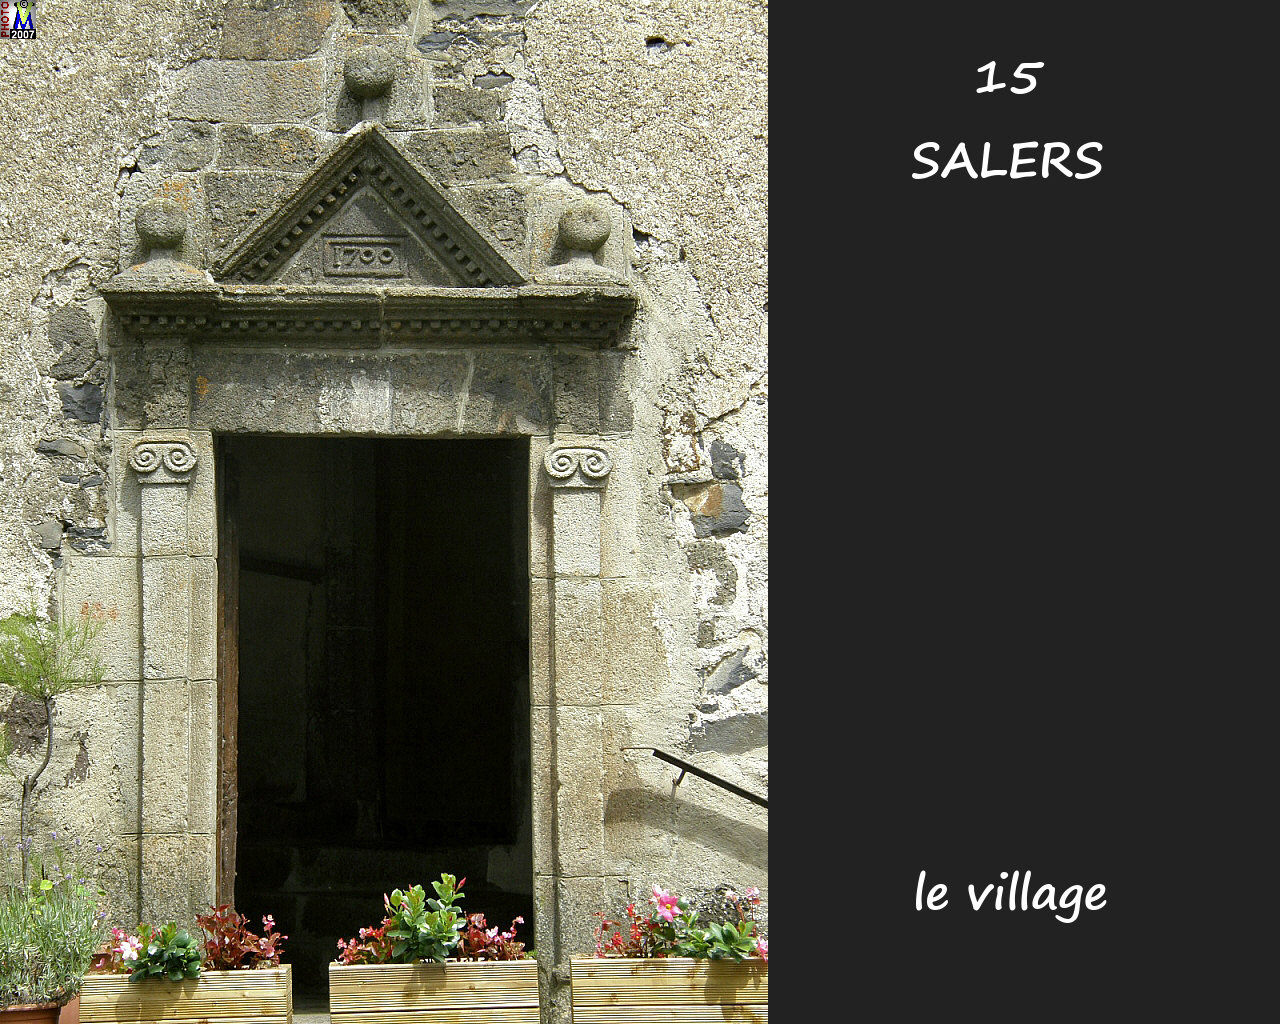 15SALERS_village_144.jpg